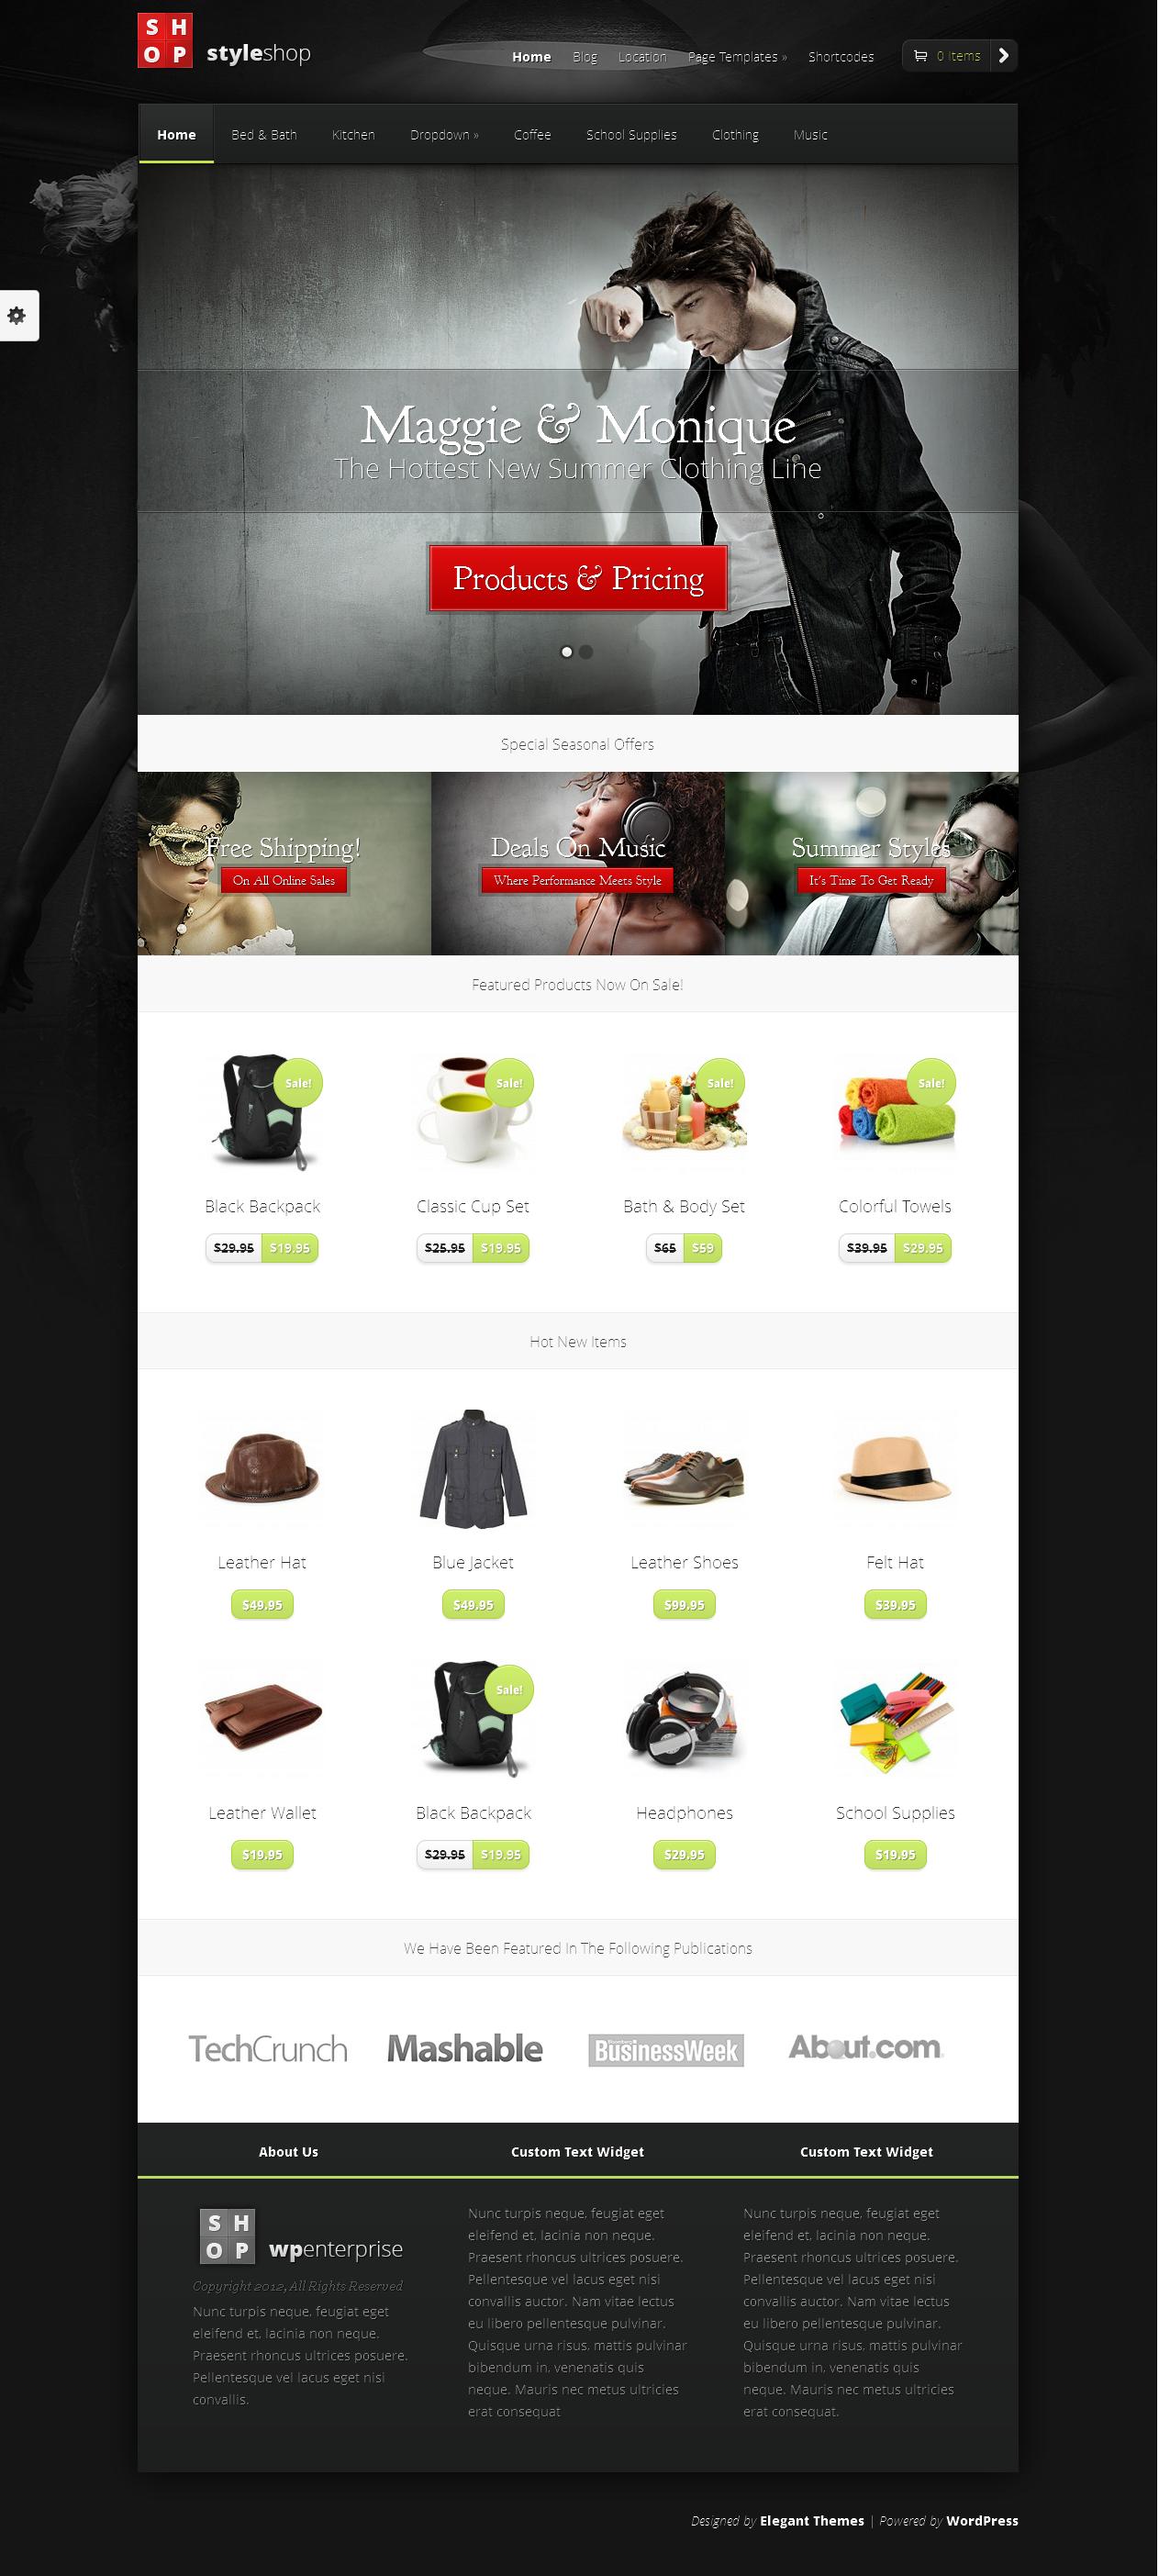 StyleShop - eCommerce Theme